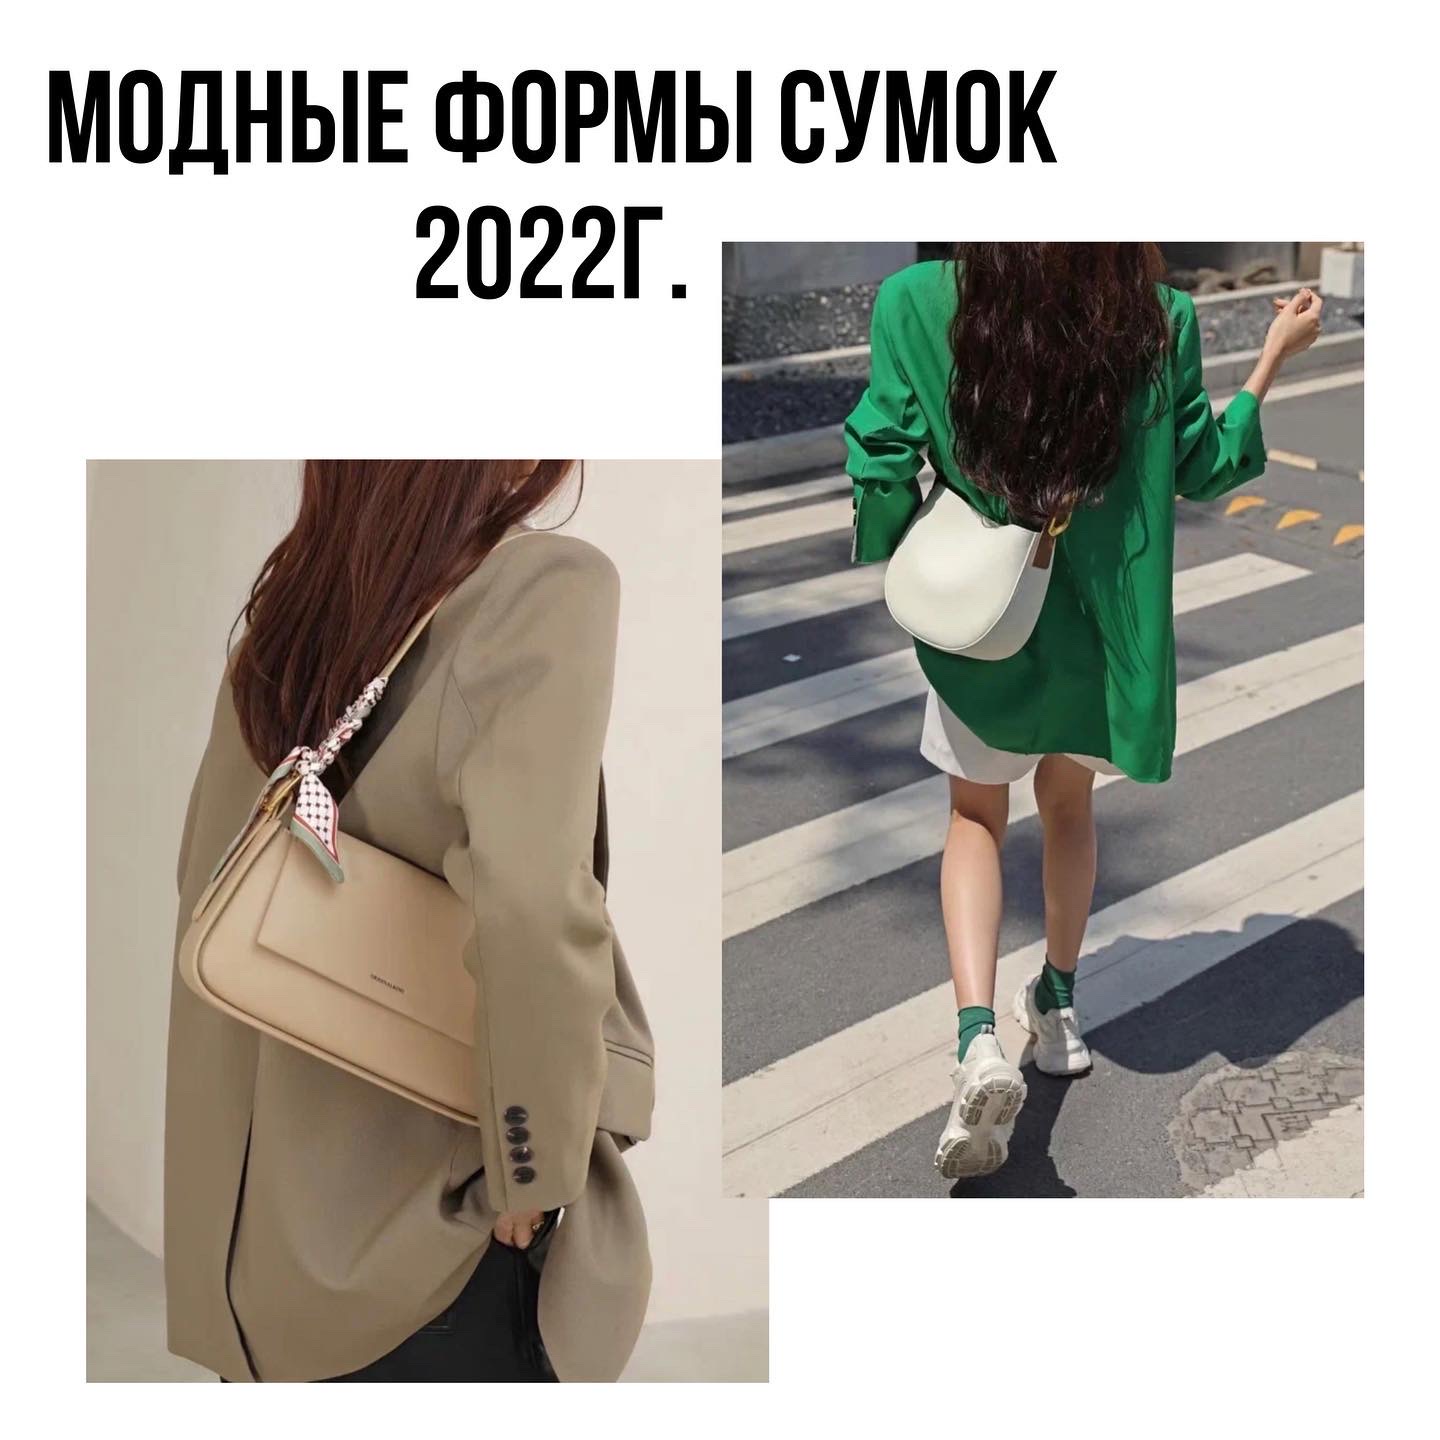 Модные формы сумок на 2022 год.Часть 1.